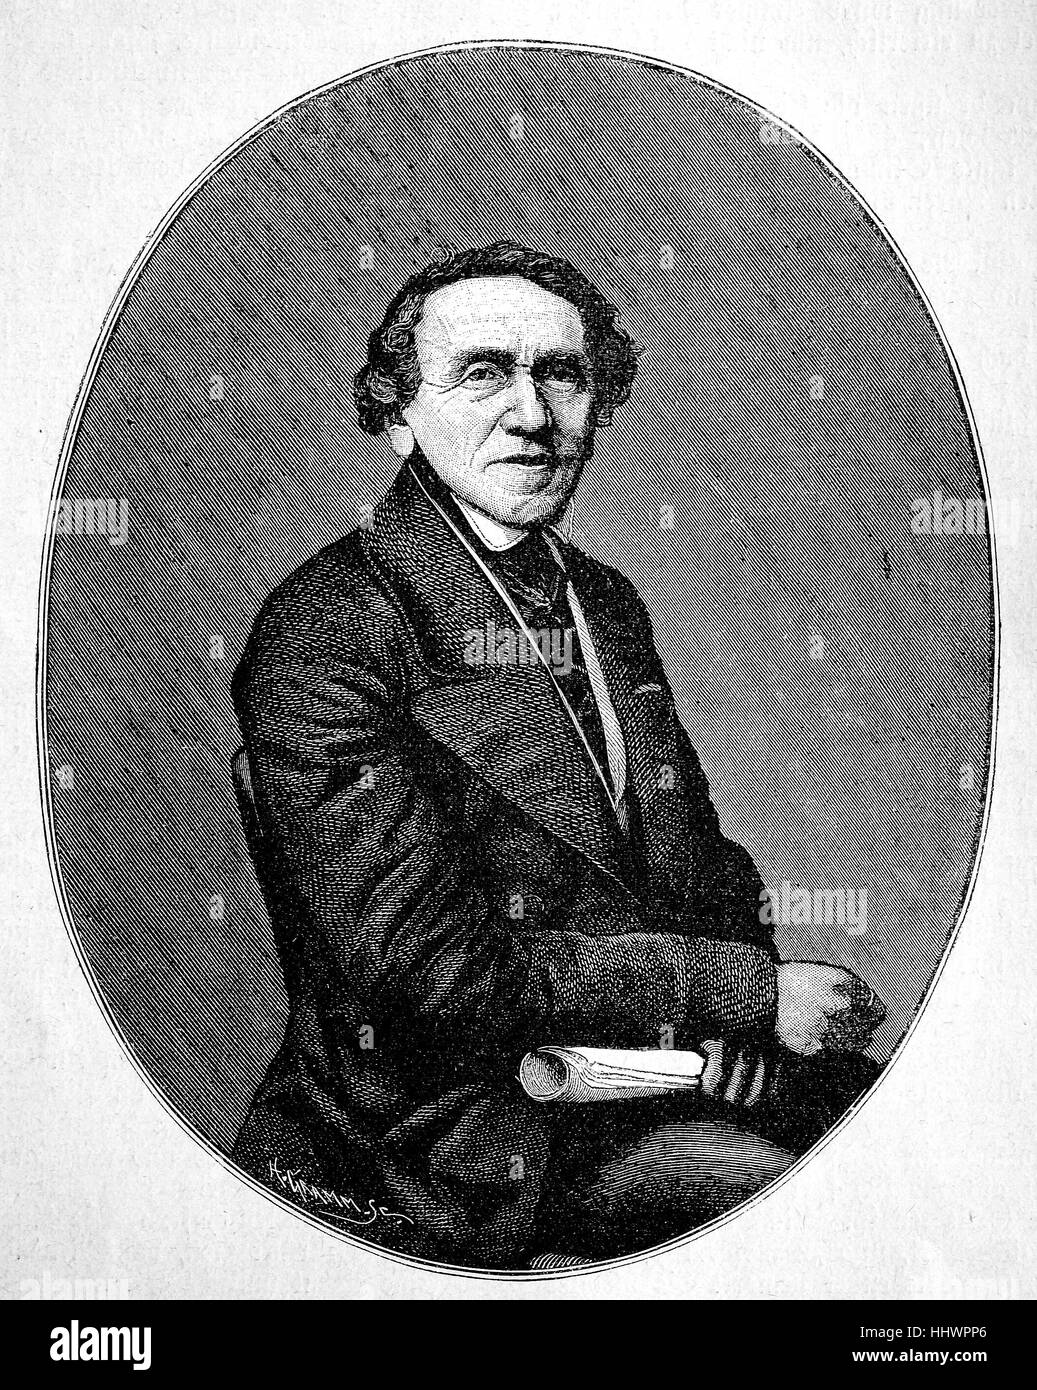 Giacomo Meyerbeer, nato come Giacobbe Liebmann birra, 5 settembre 1791 - 2 maggio 1864, era un tedesco opera compositore di nascita ebraica , immagine storica o illustrazione, pubblicato 1890, digitale migliorata Foto Stock